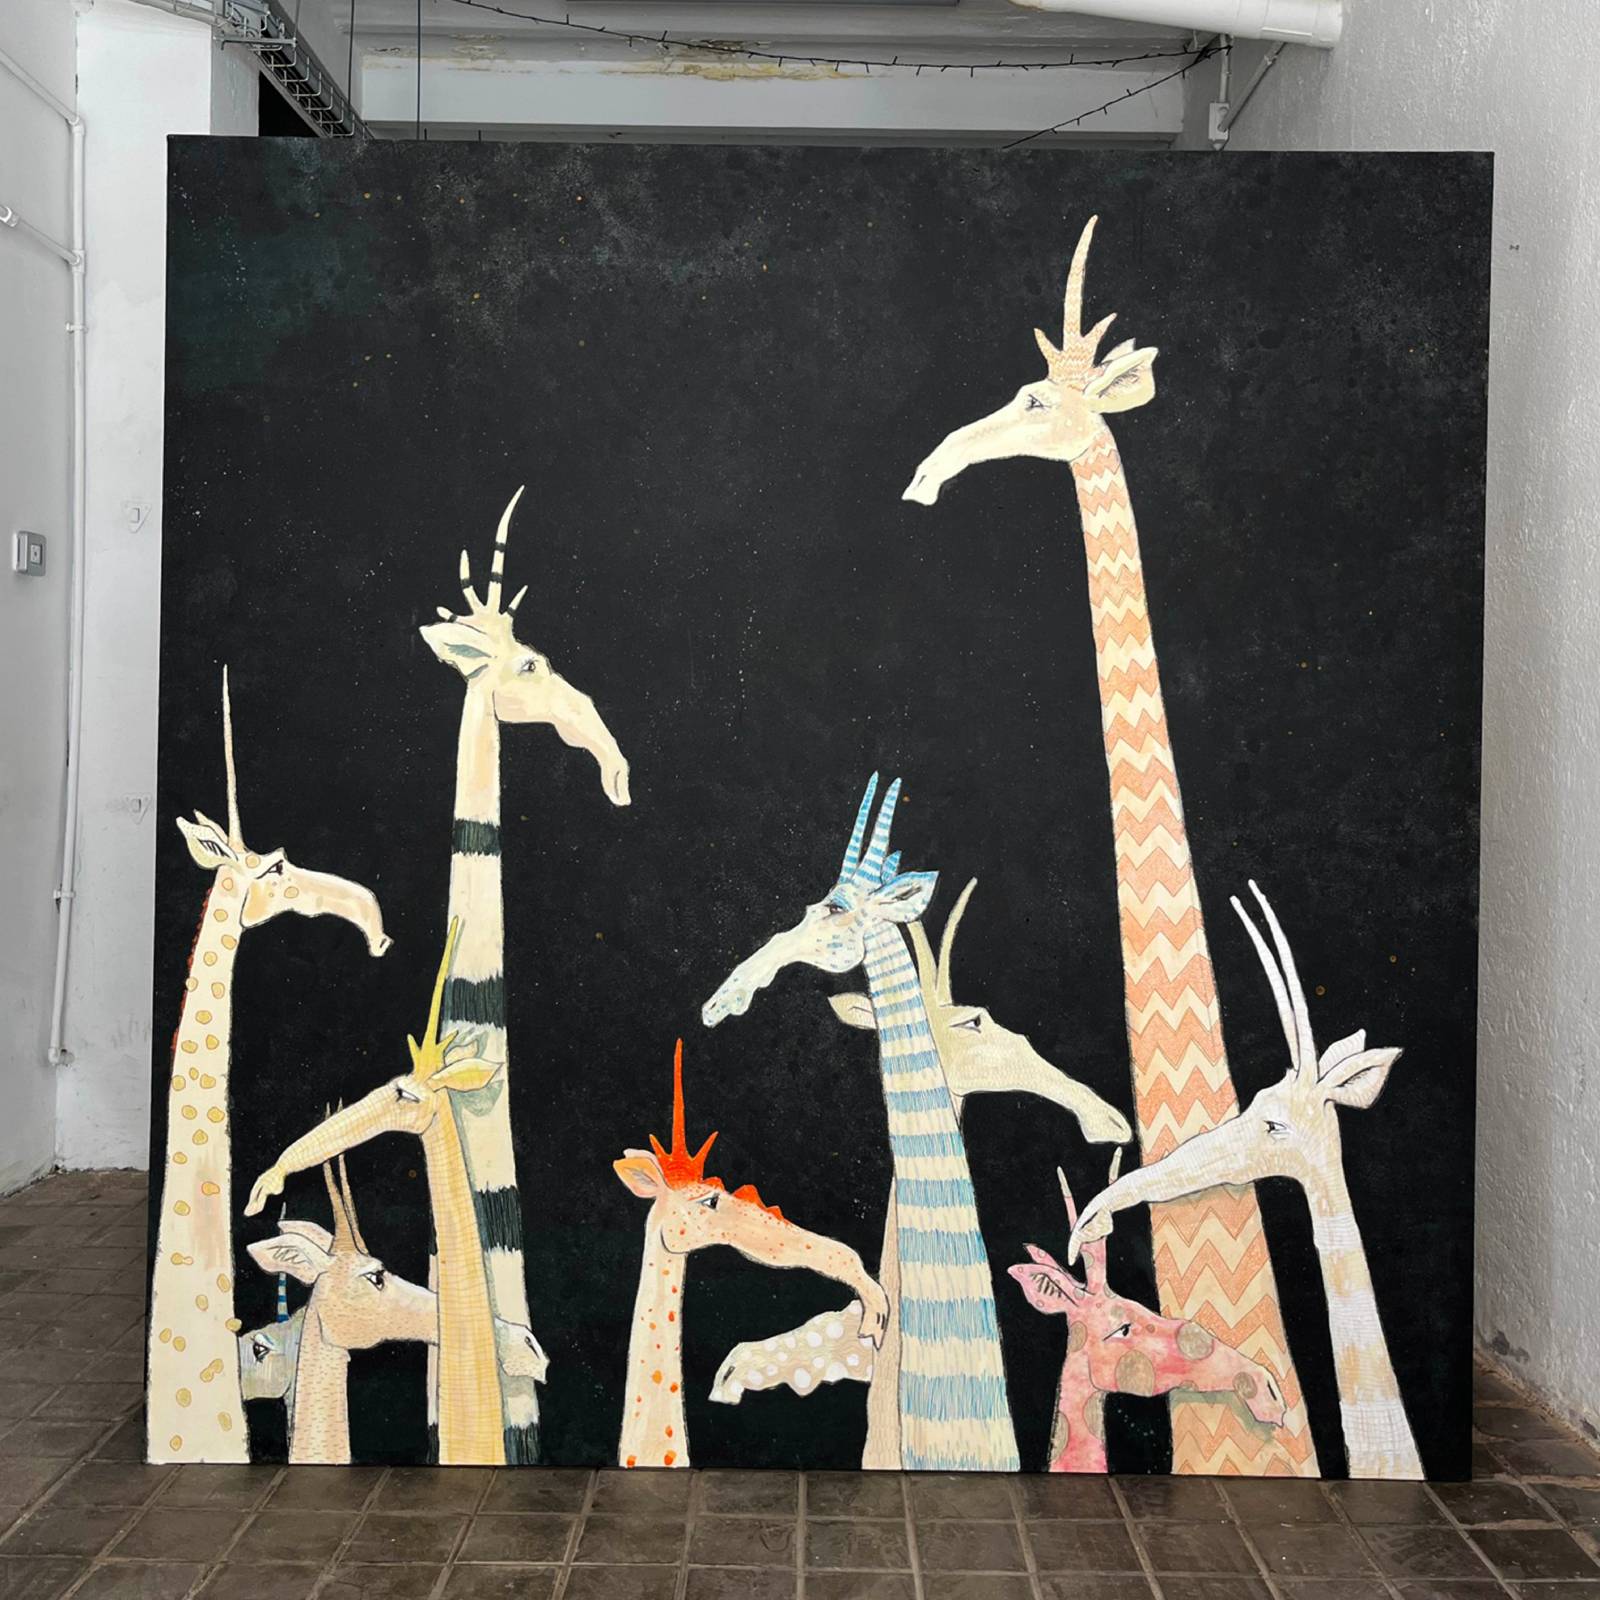 'Bosque de jirafas' es una de sus últimas creaciones y se presenta en Estampa. Técnica mixta. Medidas: 195 cm x 195 cm. Precio: 4.500 euros +10% de IVA. - imagen 2